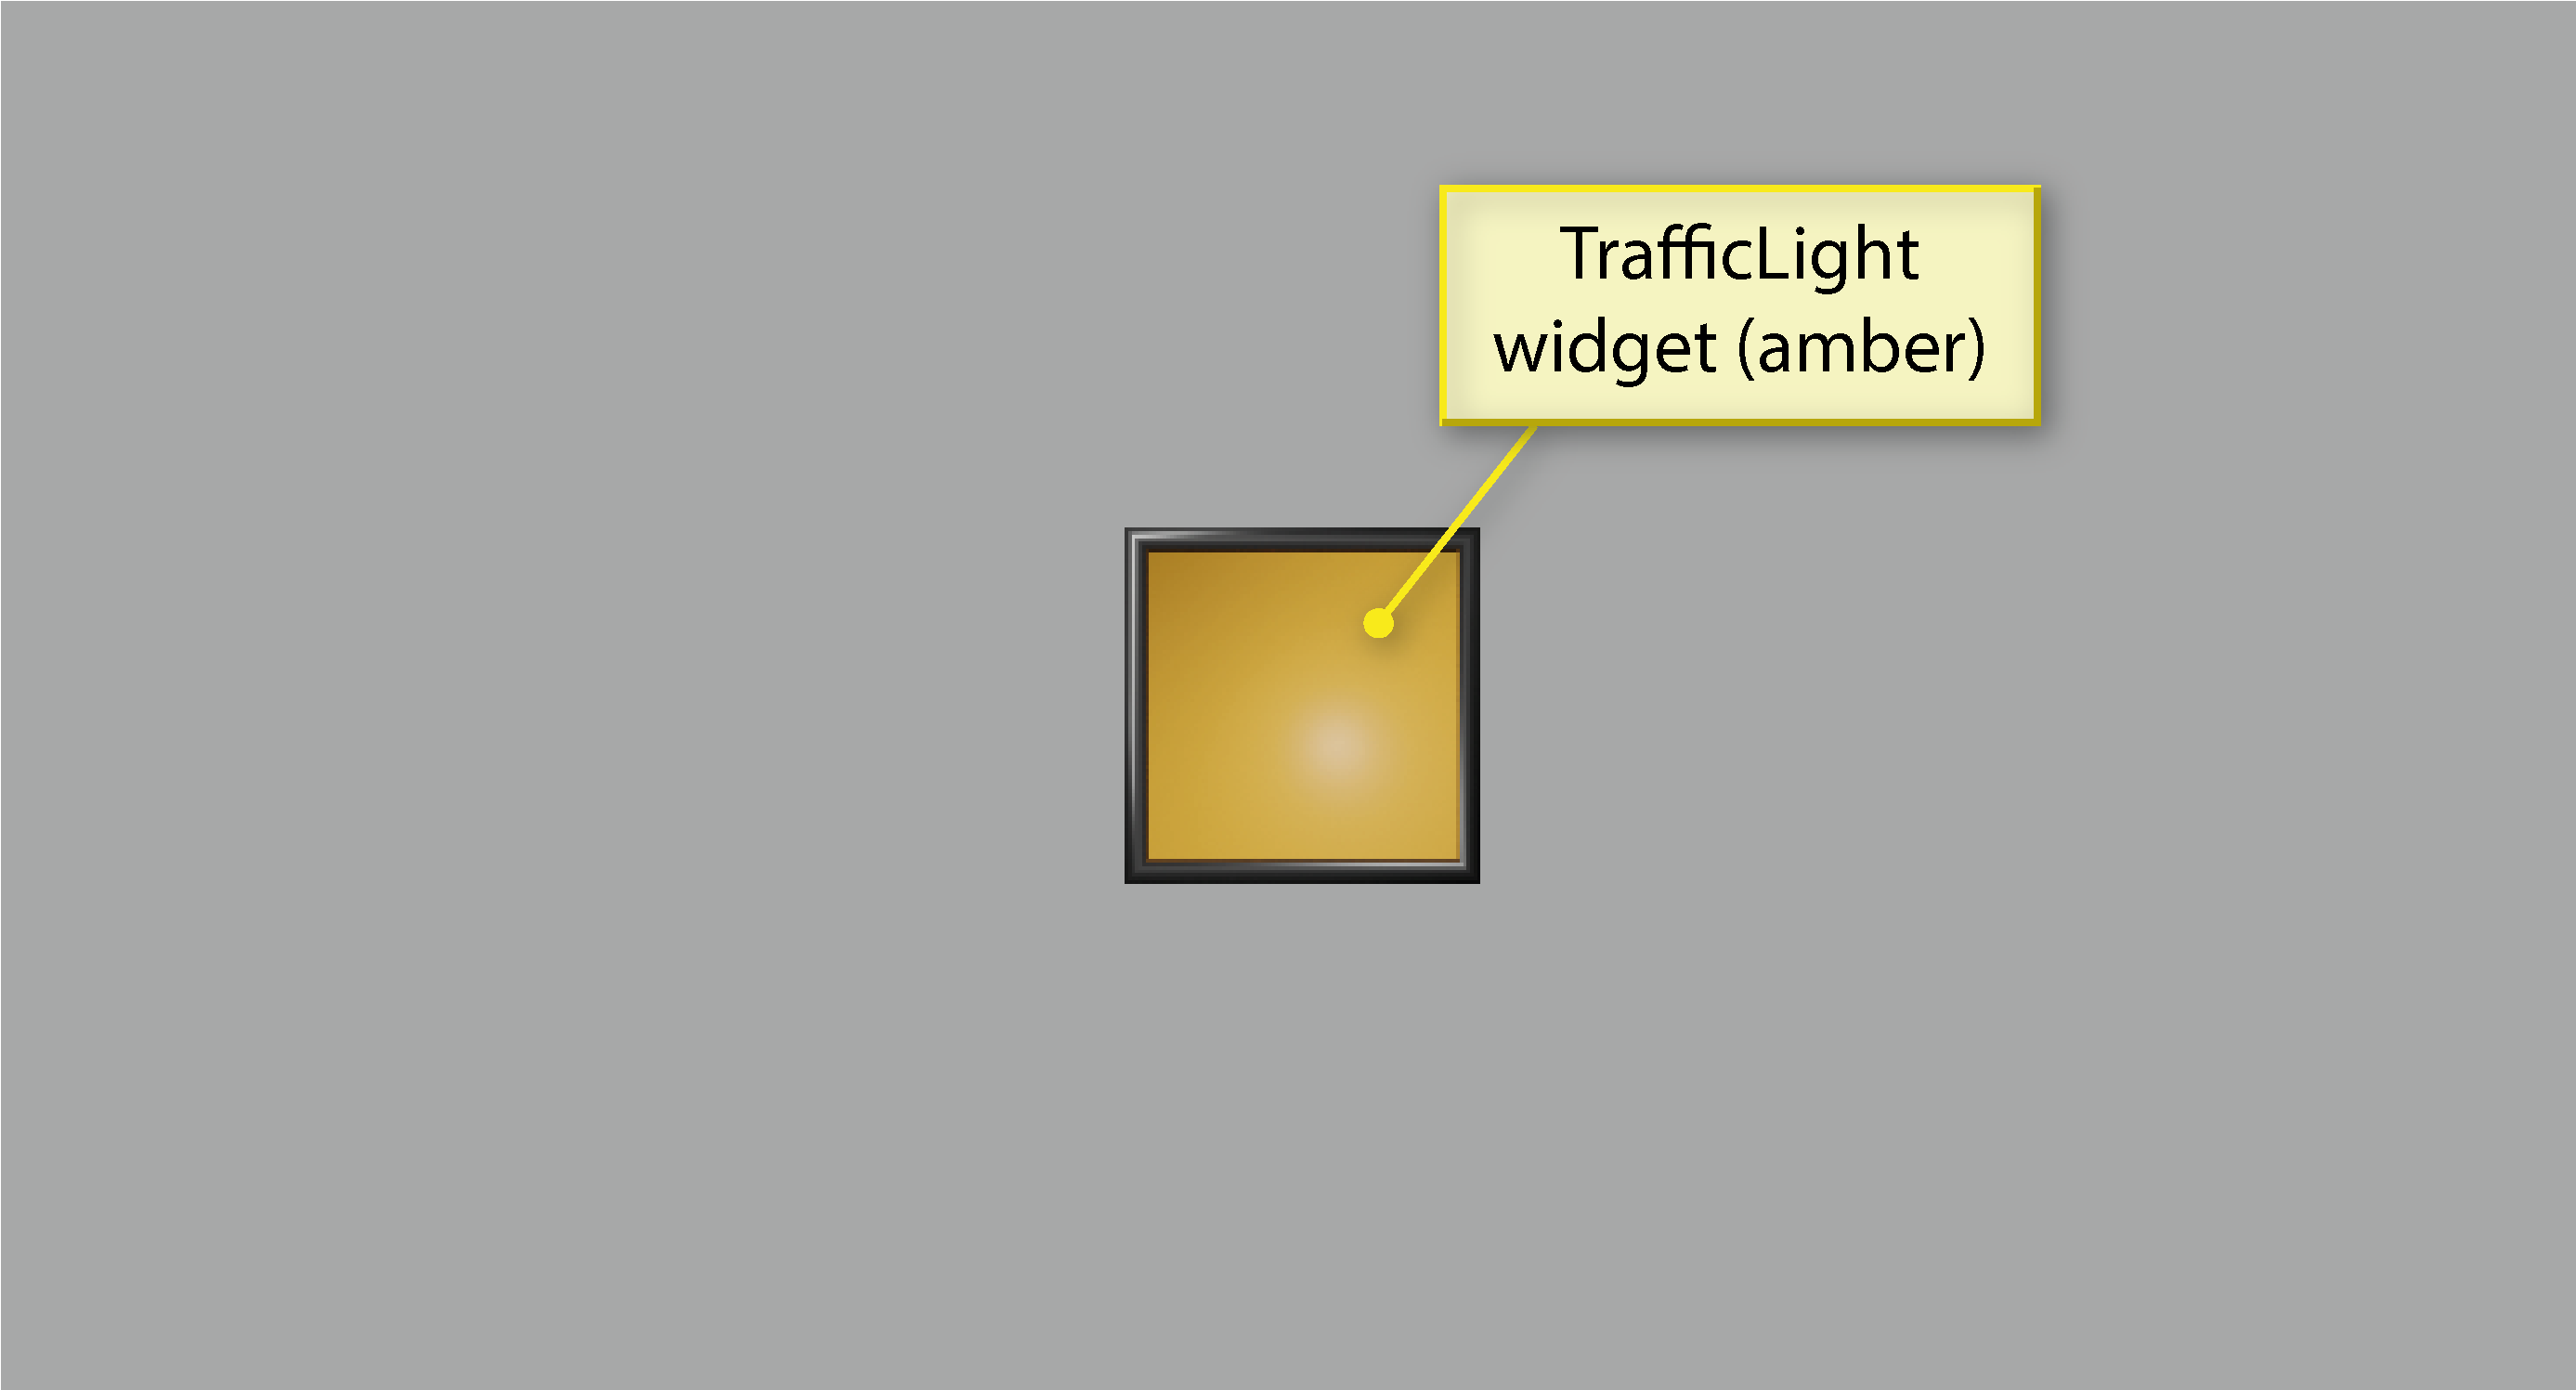 TrafficLights widget